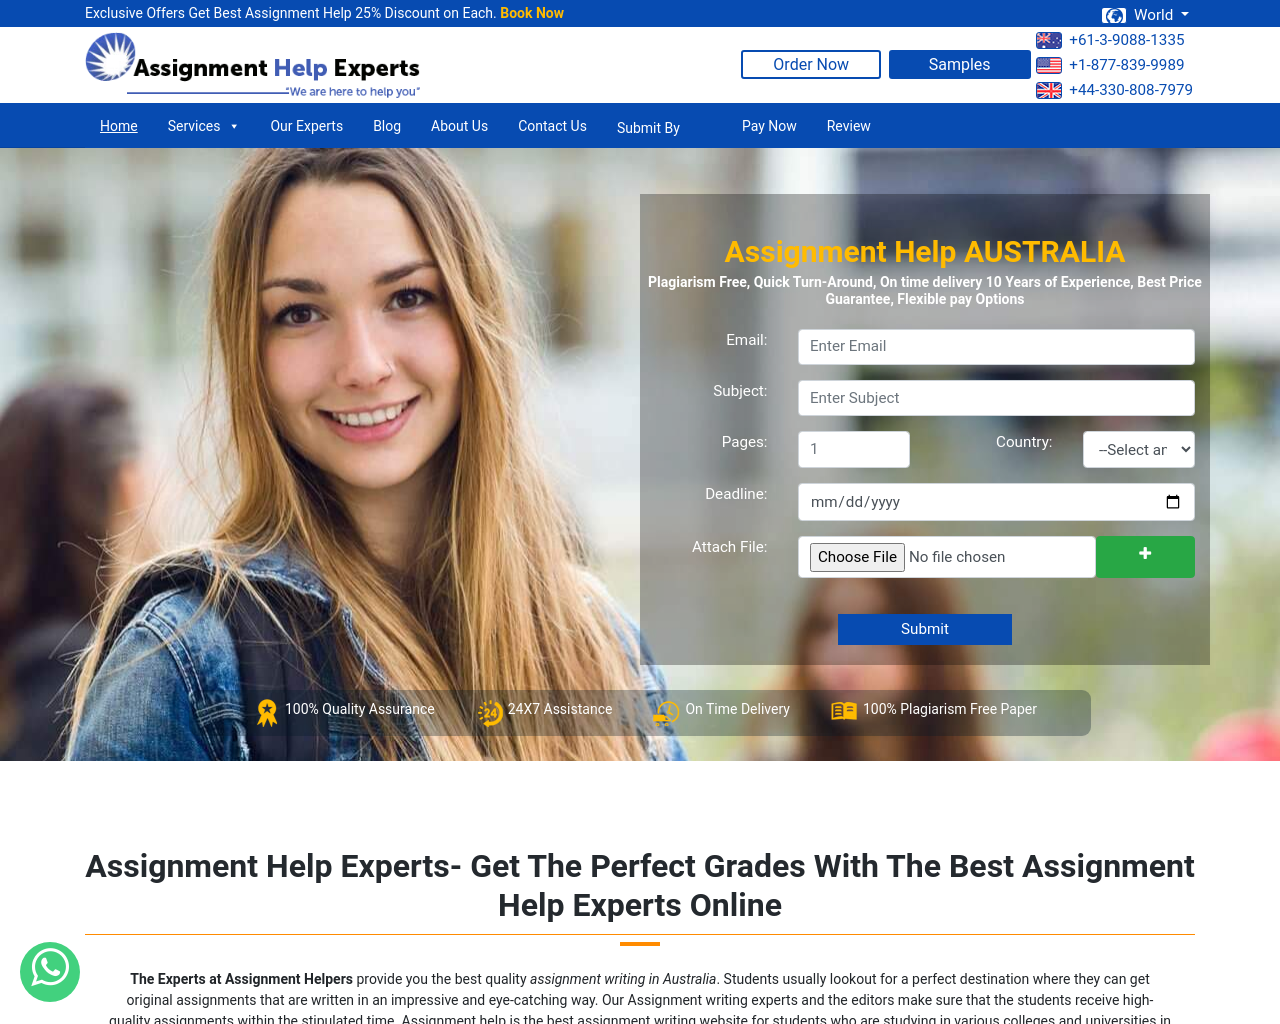 assignmenthelpexperts.com